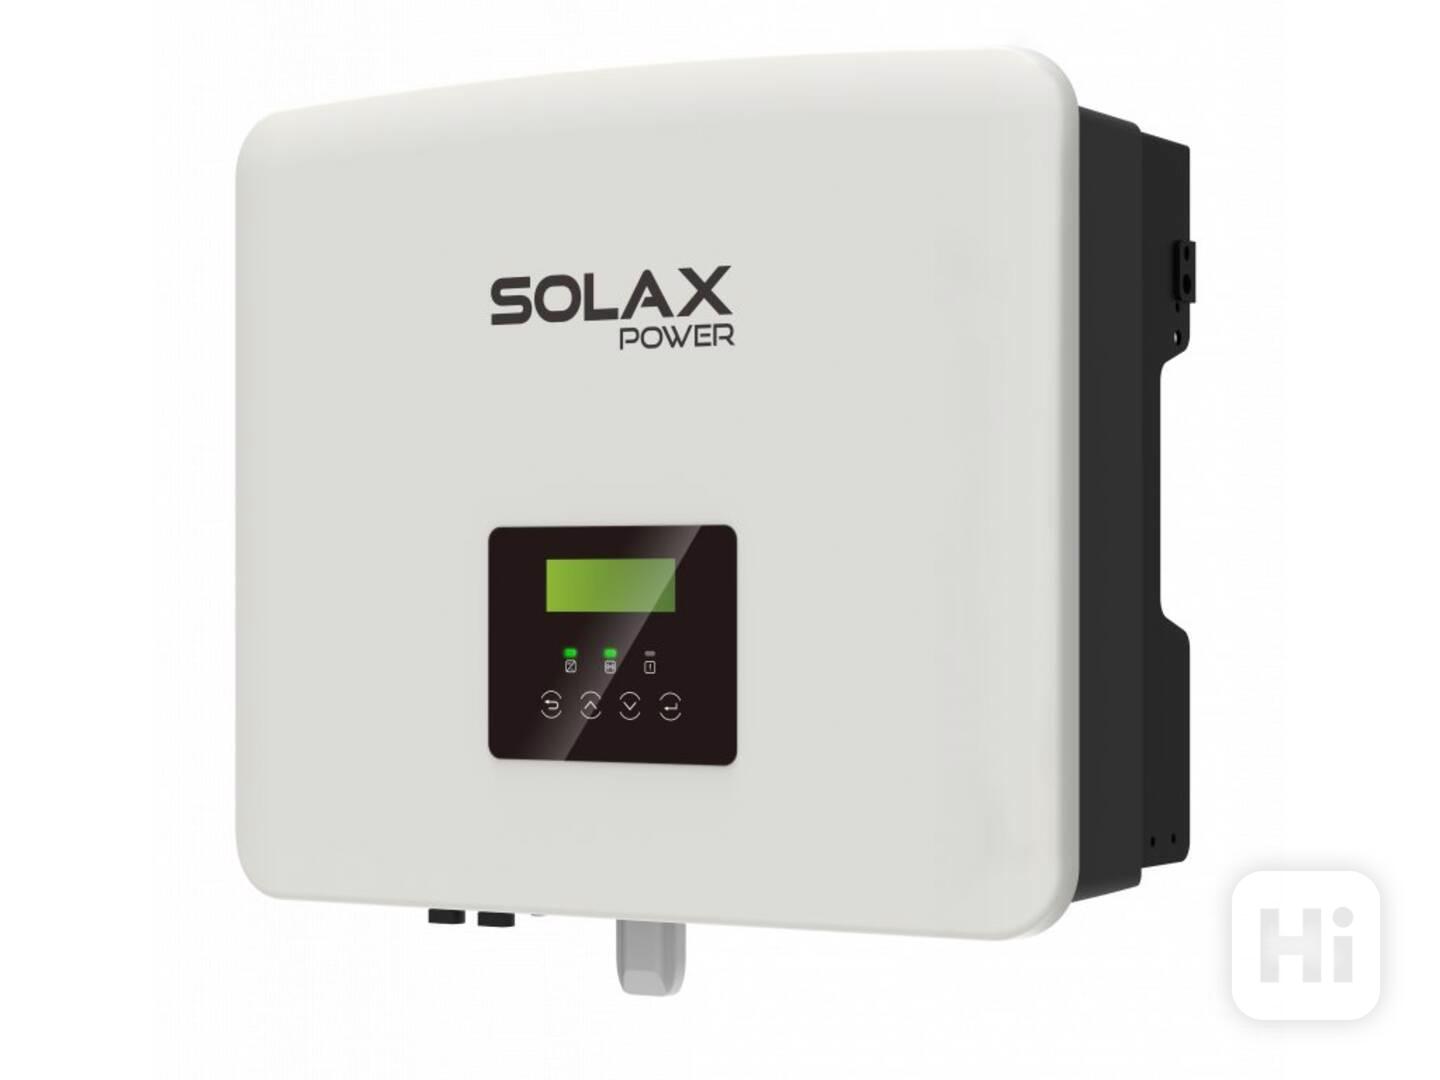 Solax měnič X3 hybrid 10.0.0 D (G4) - foto 1